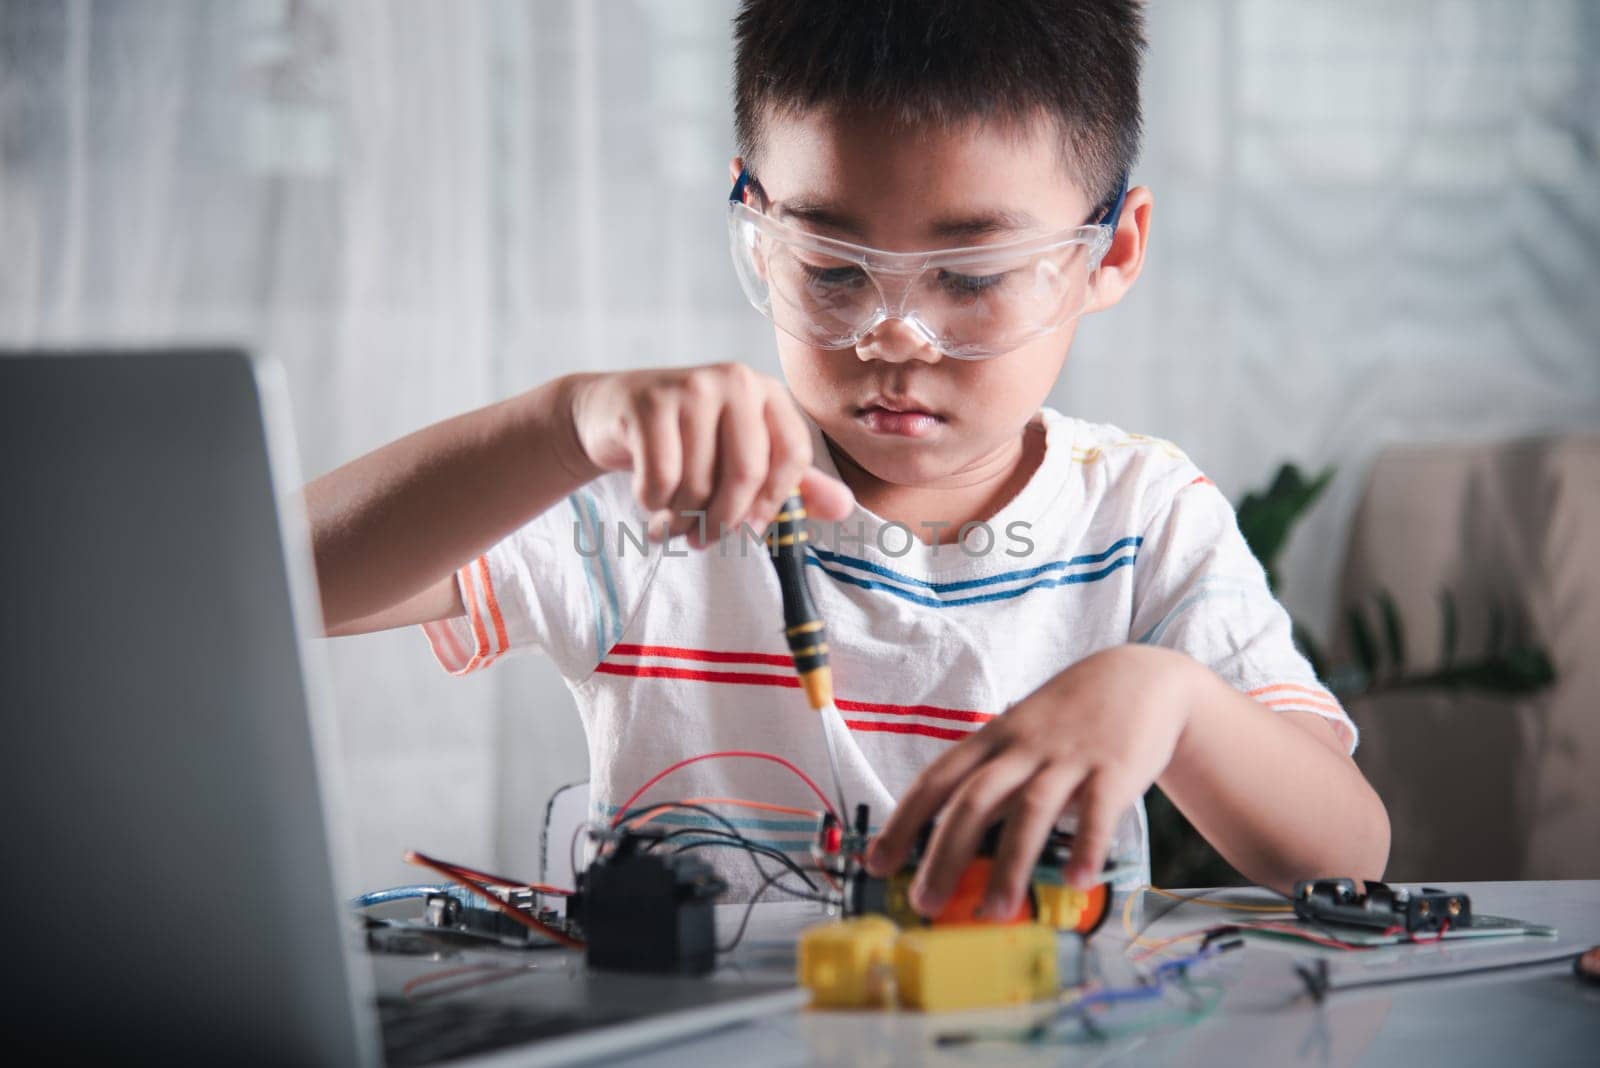 Asian kid boy assembling the Arduino robot car homework project at home by Sorapop